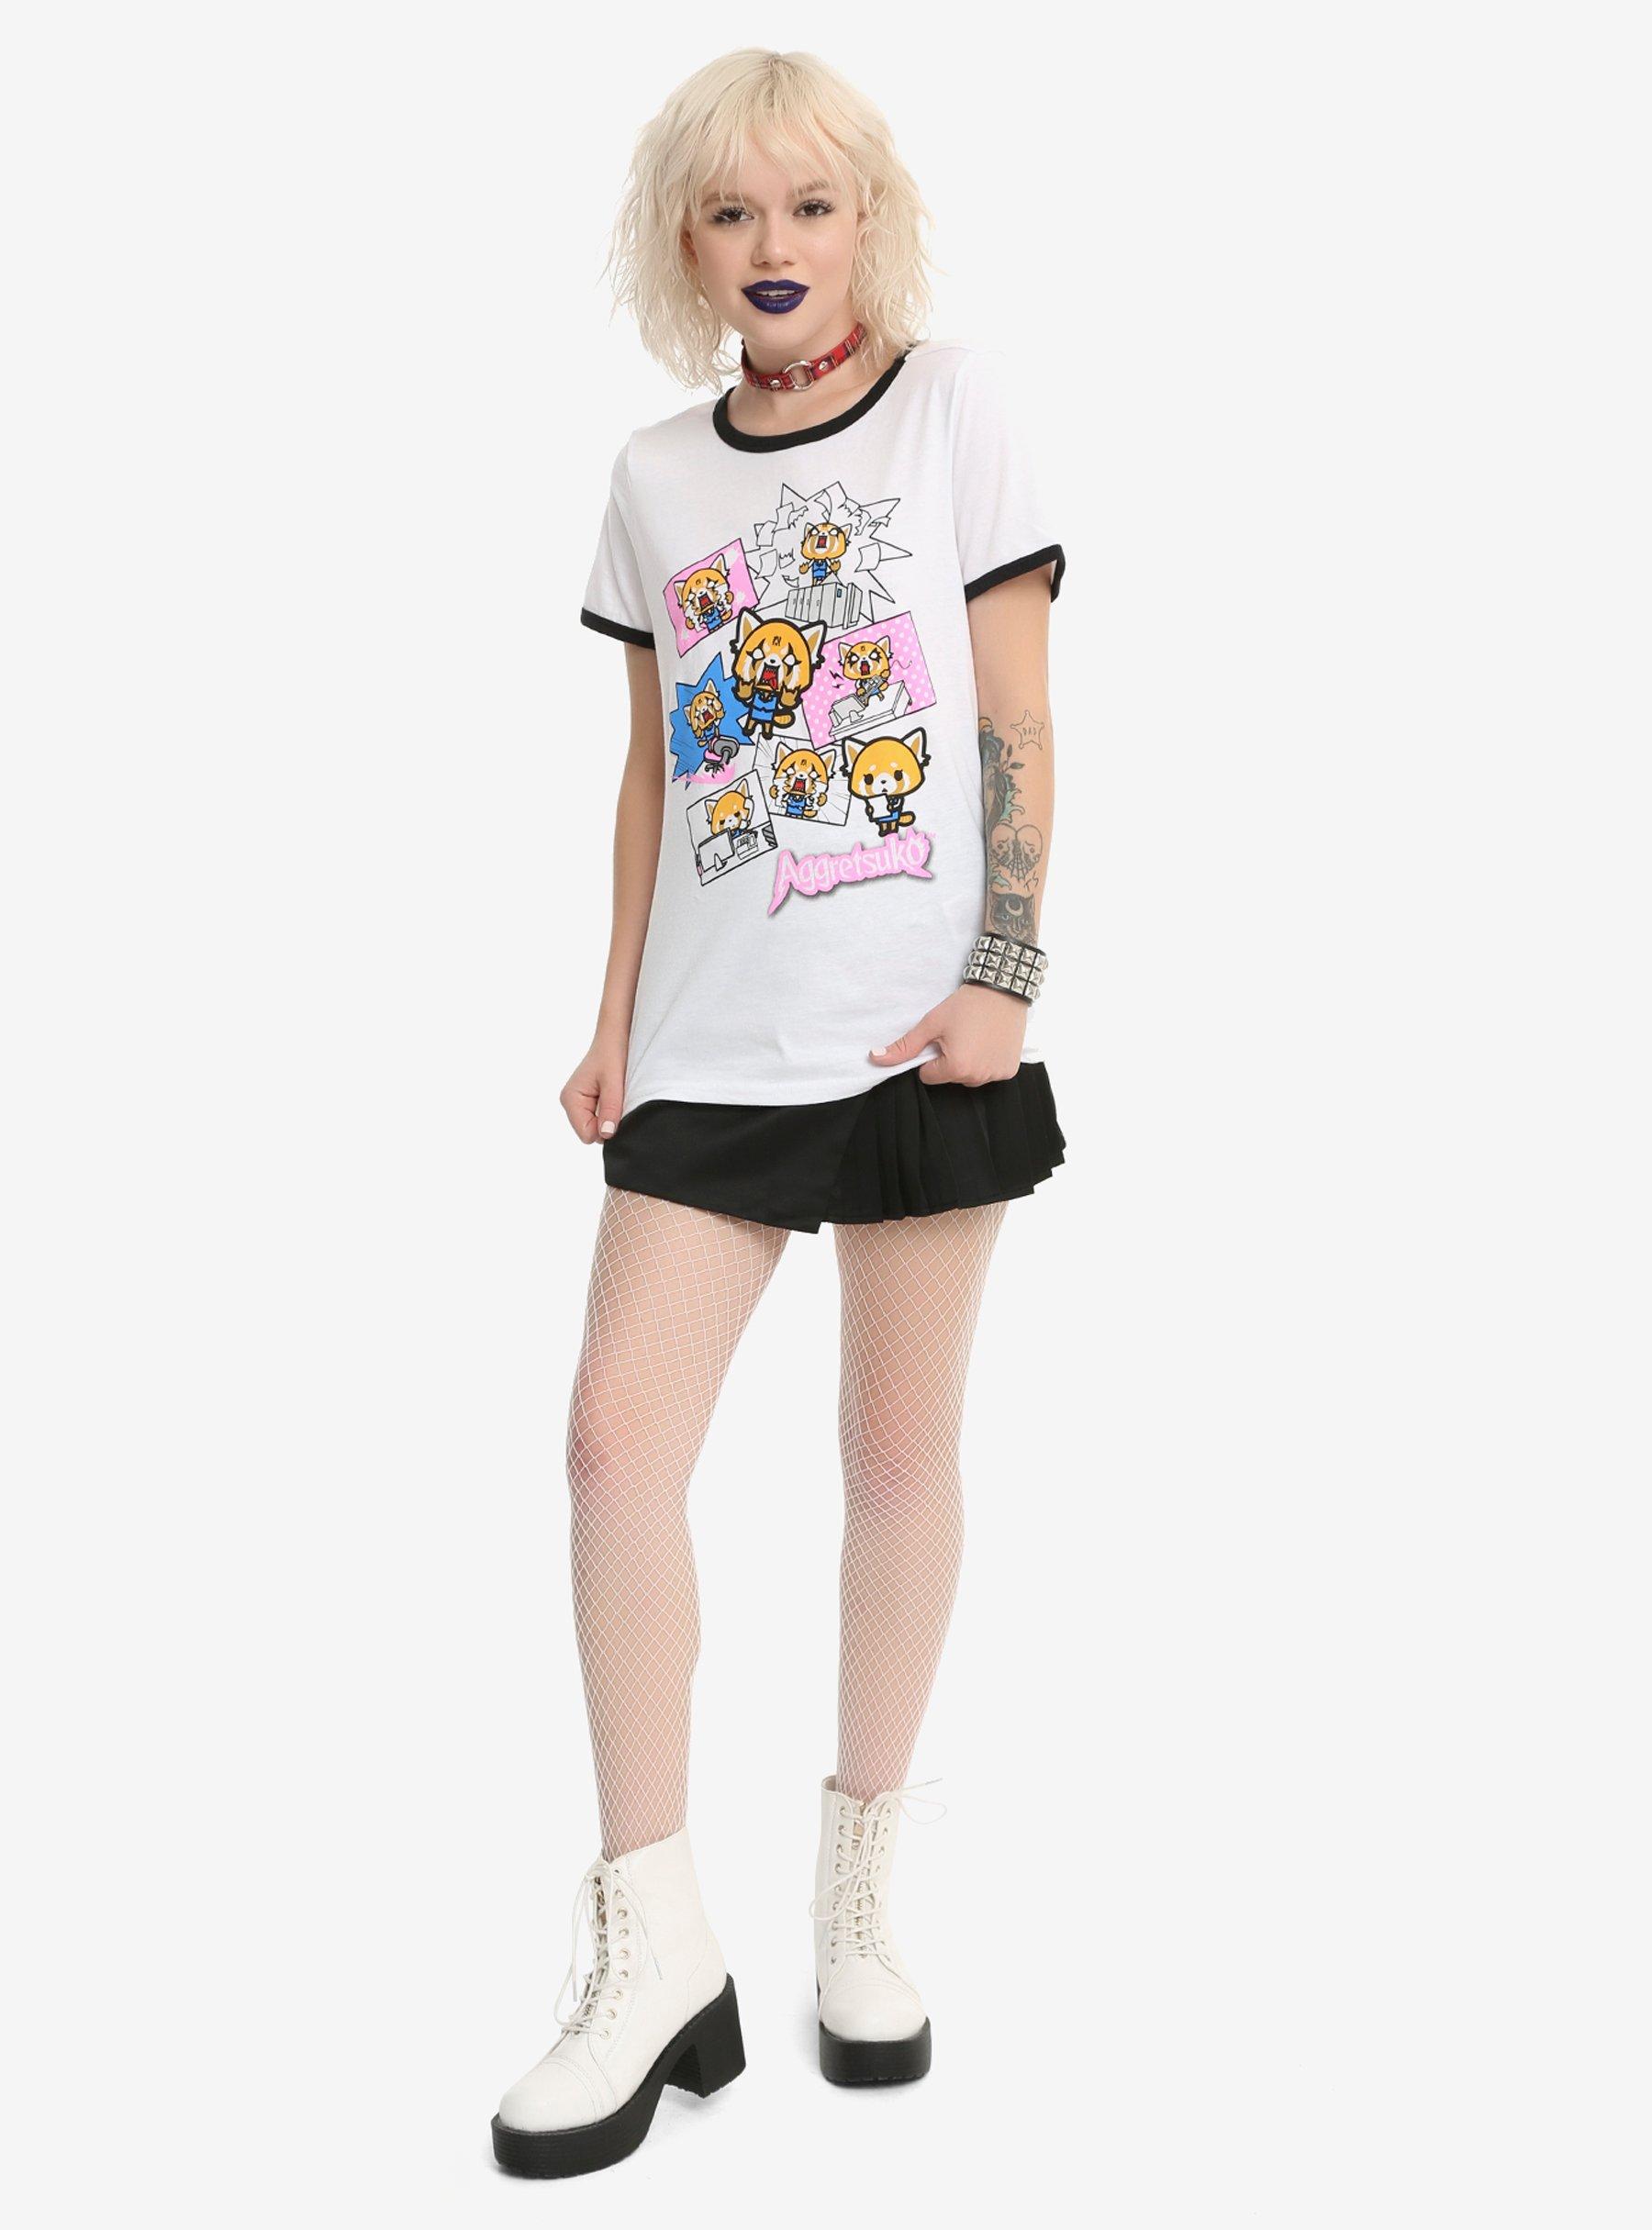 Aggretsuko Moods Girls Ringer T-Shirt, , alternate